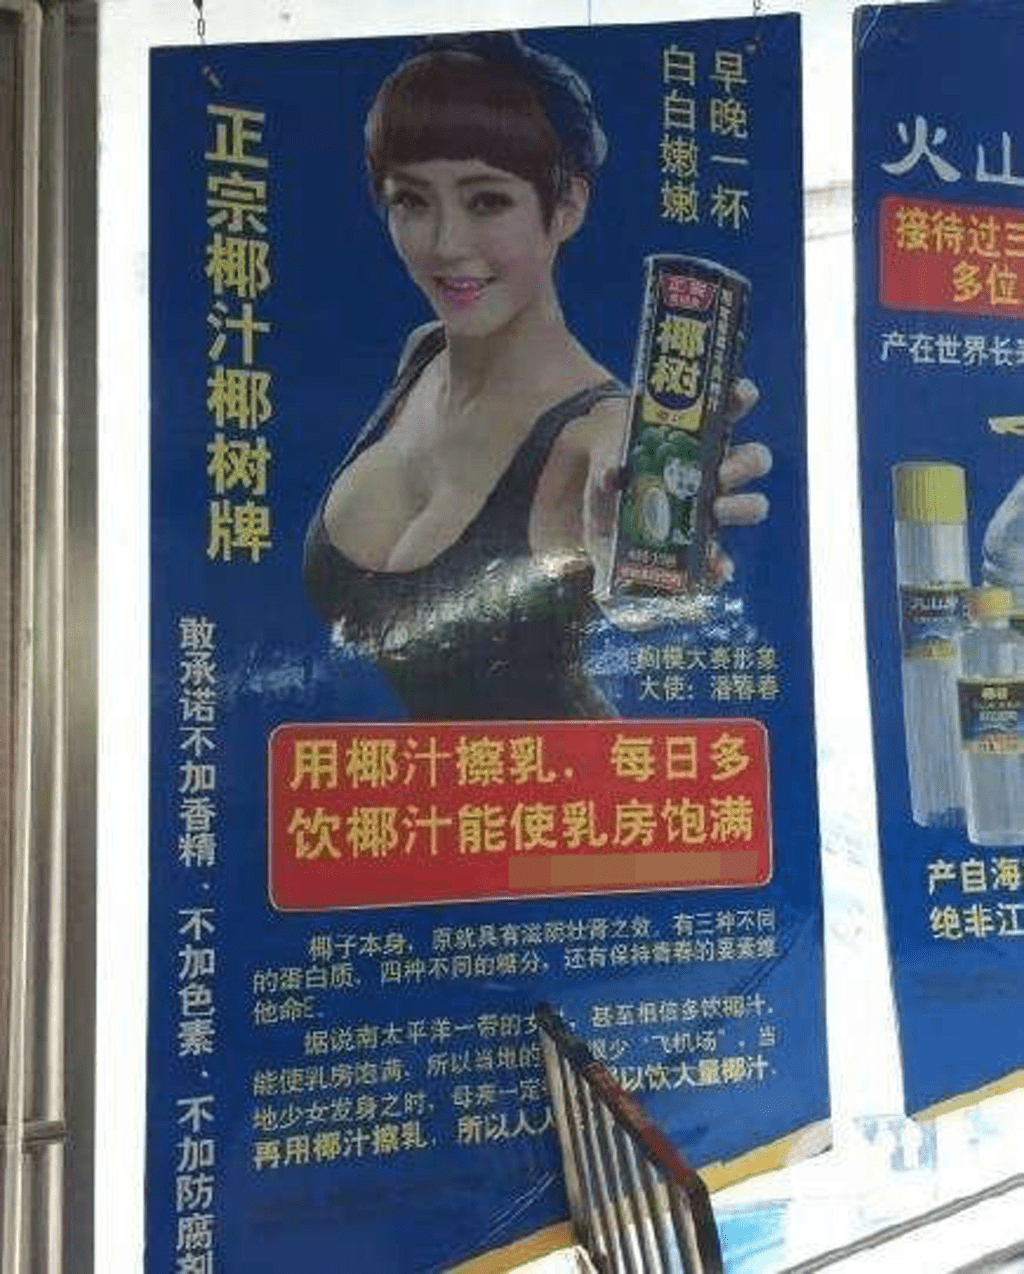 椰树牌广告起用身材丰满女性卖广告，再加上「用椰汁擦乳」等用语。